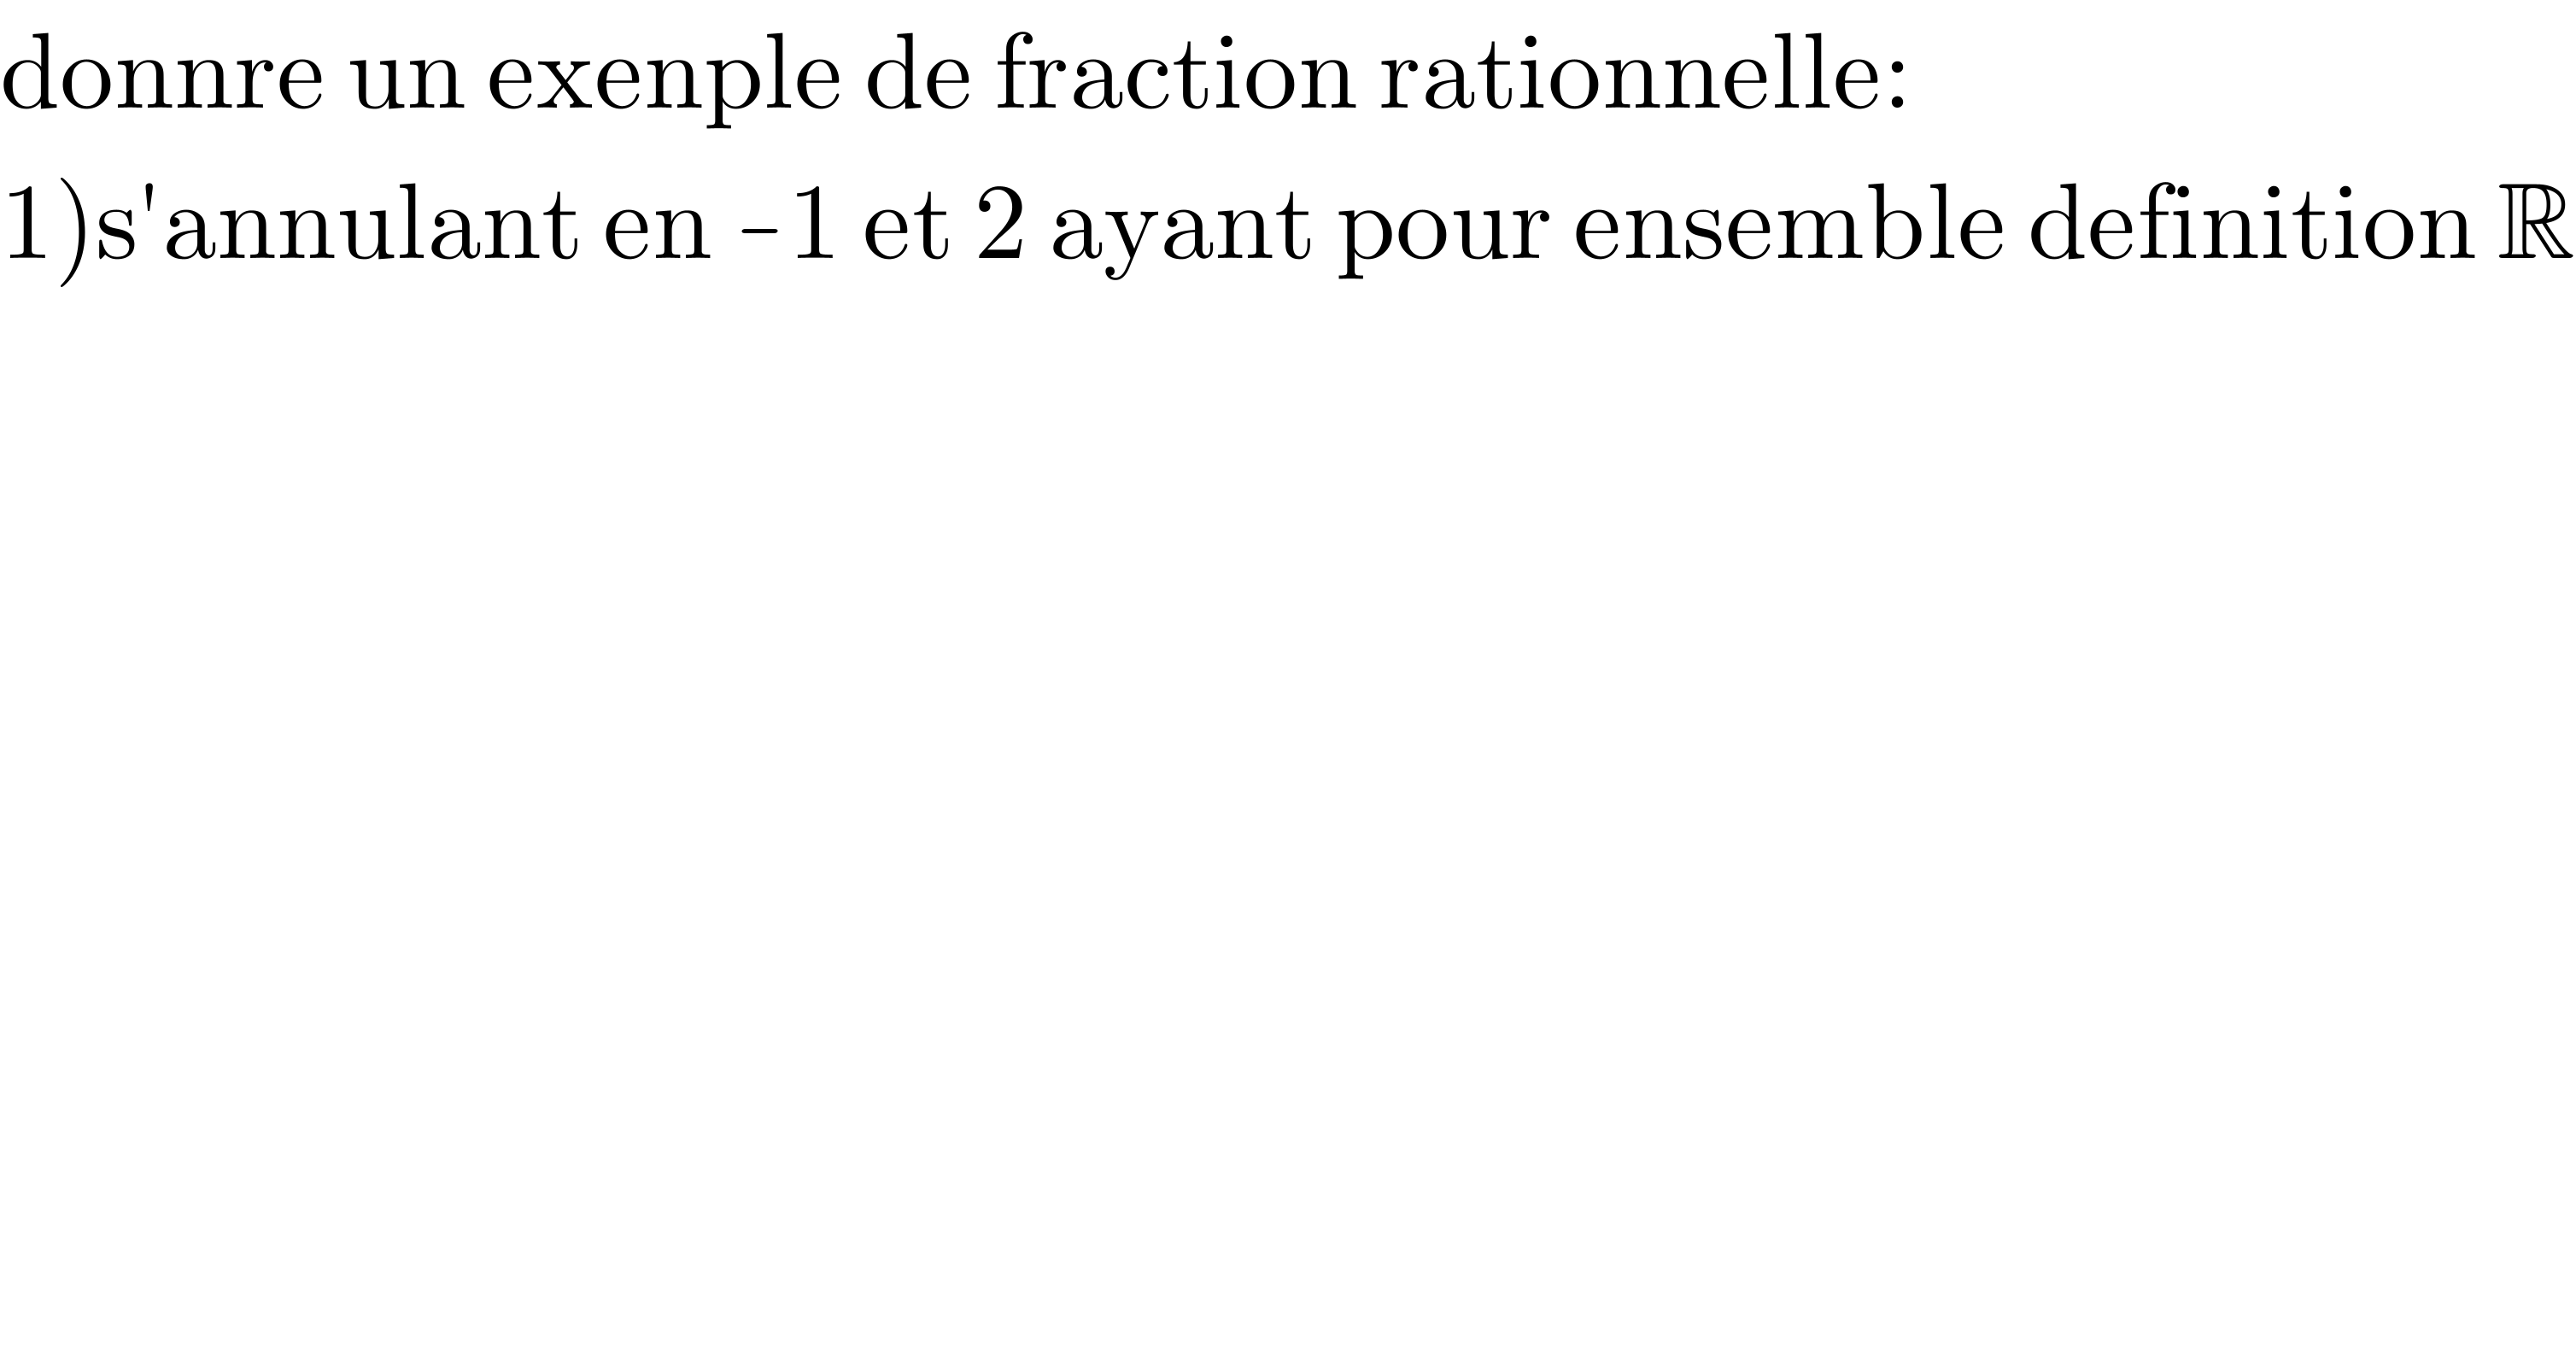 donnre un exenple de fraction rationnelle:  1)s′annulant en -1 et 2 ayant pour ensemble definition R  